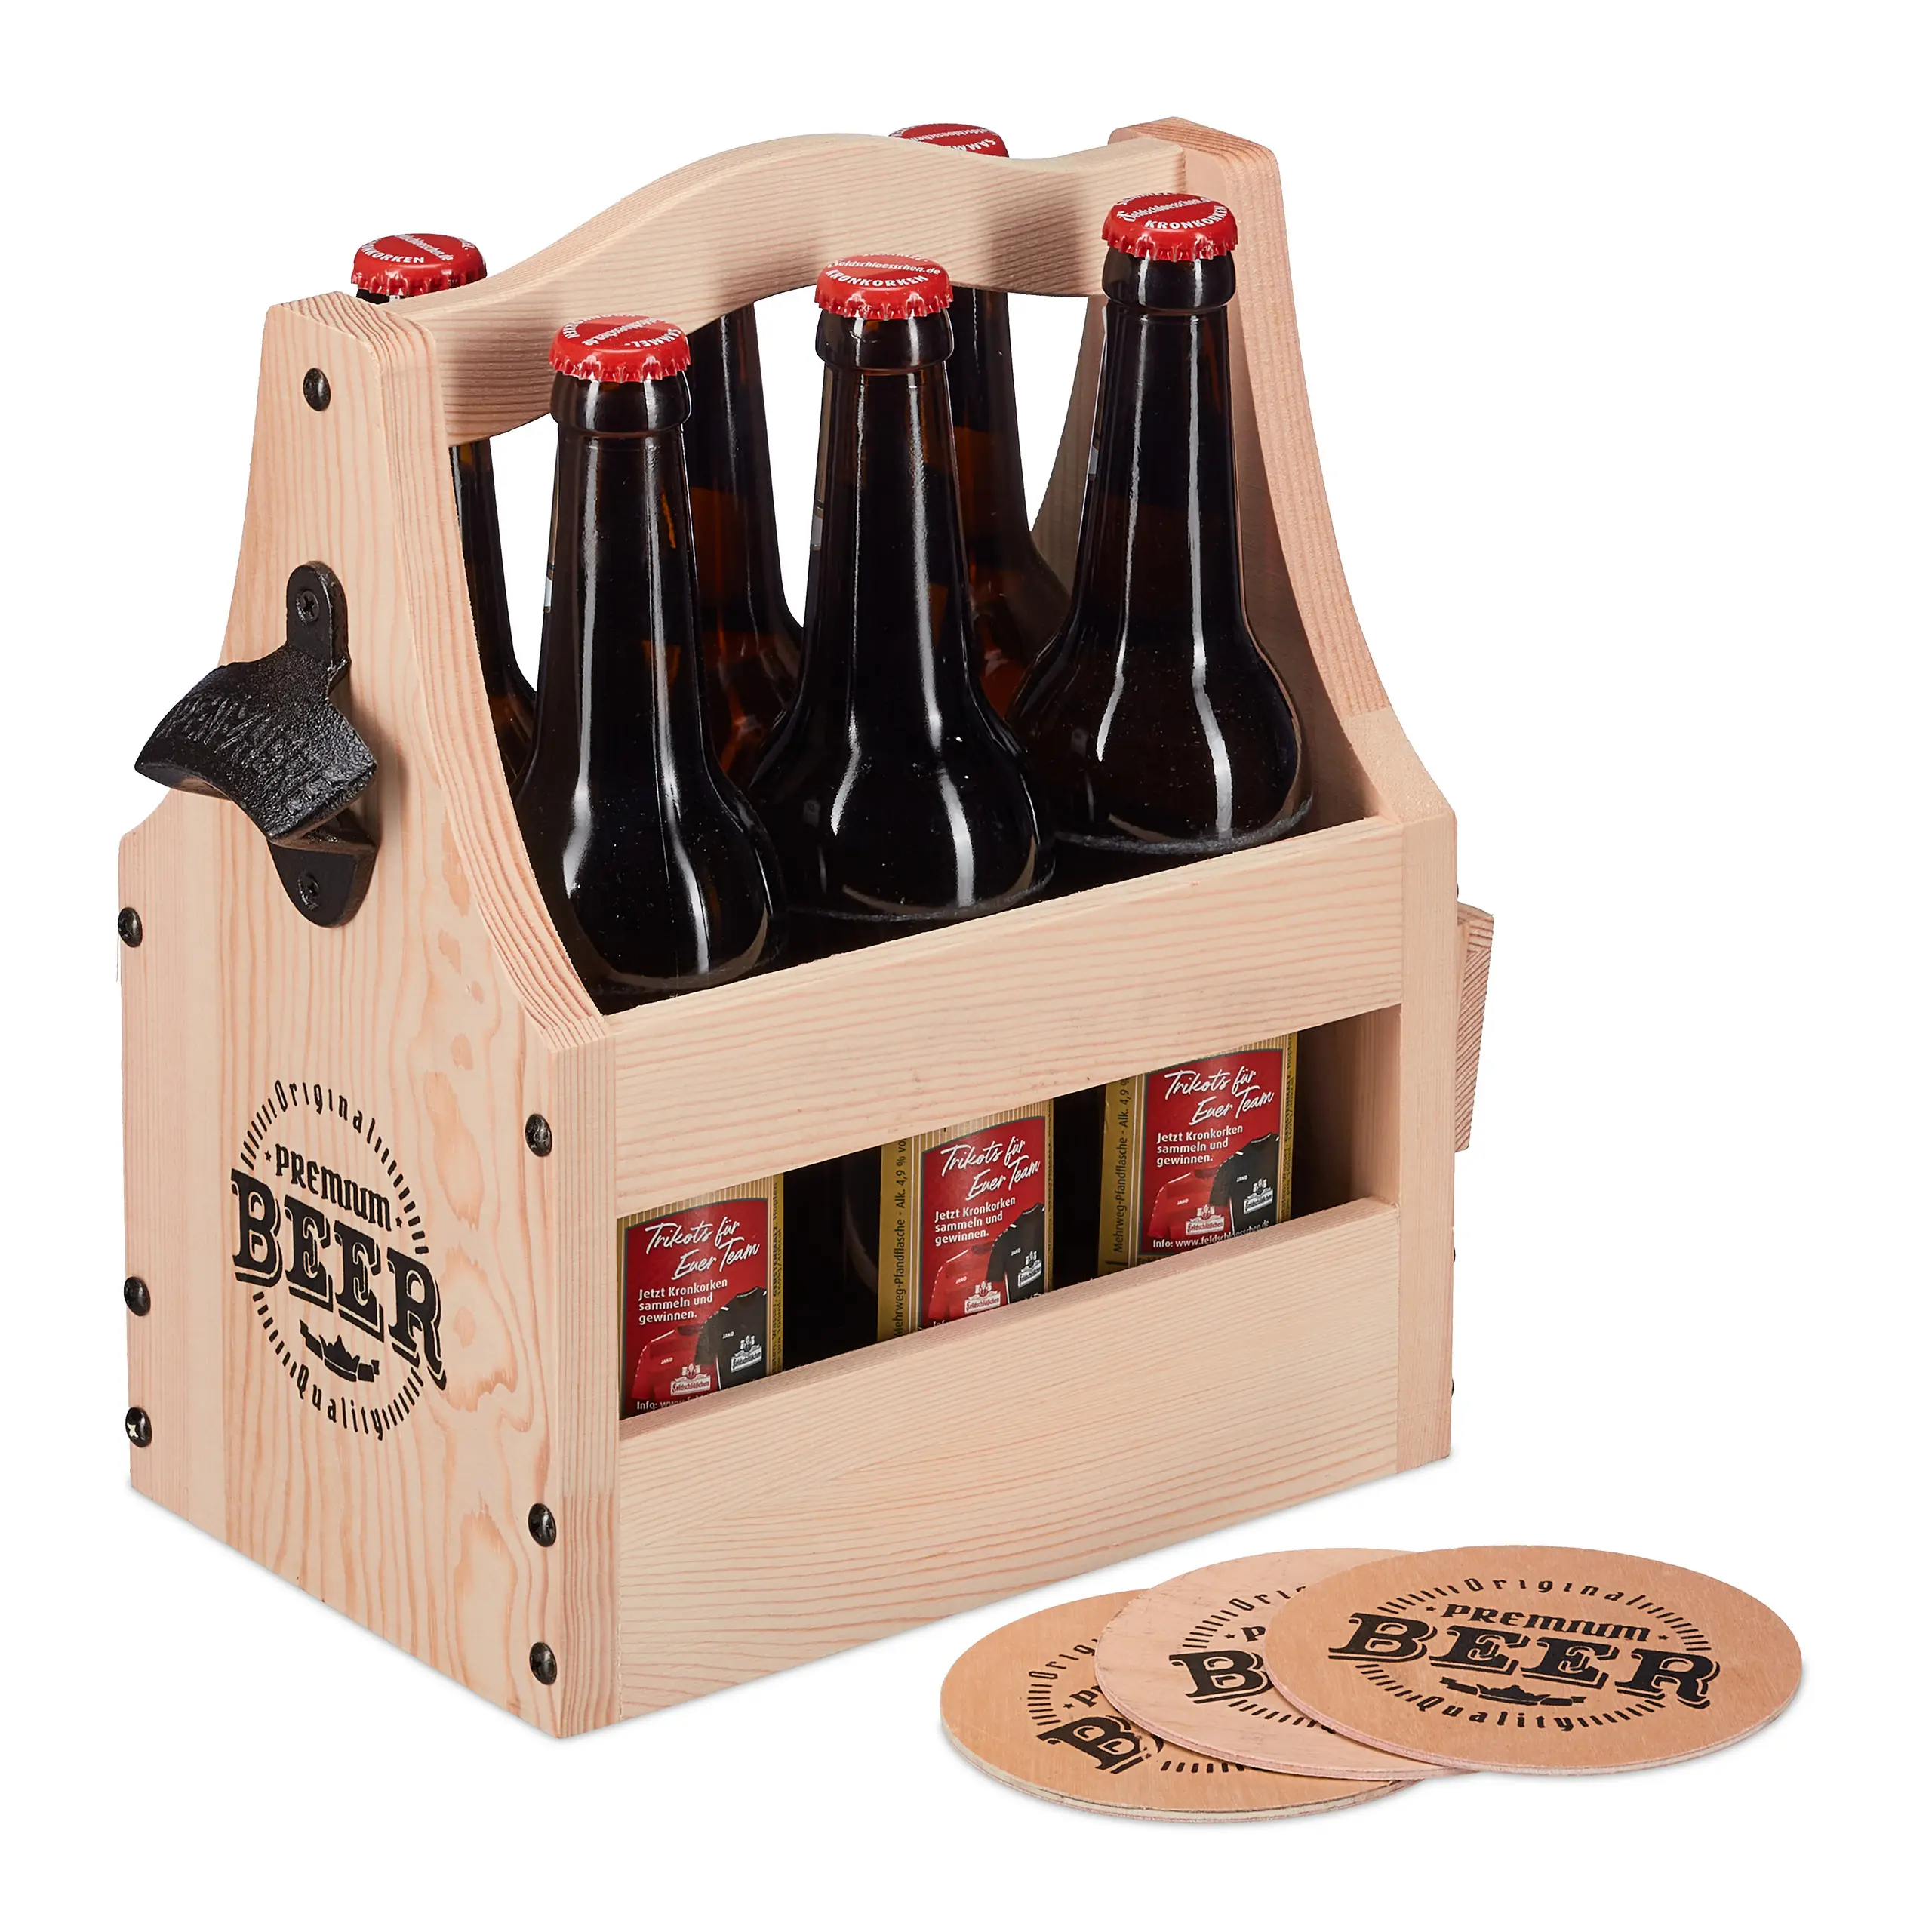 Biertr盲ger aus Holz mit Flaschen枚ffner